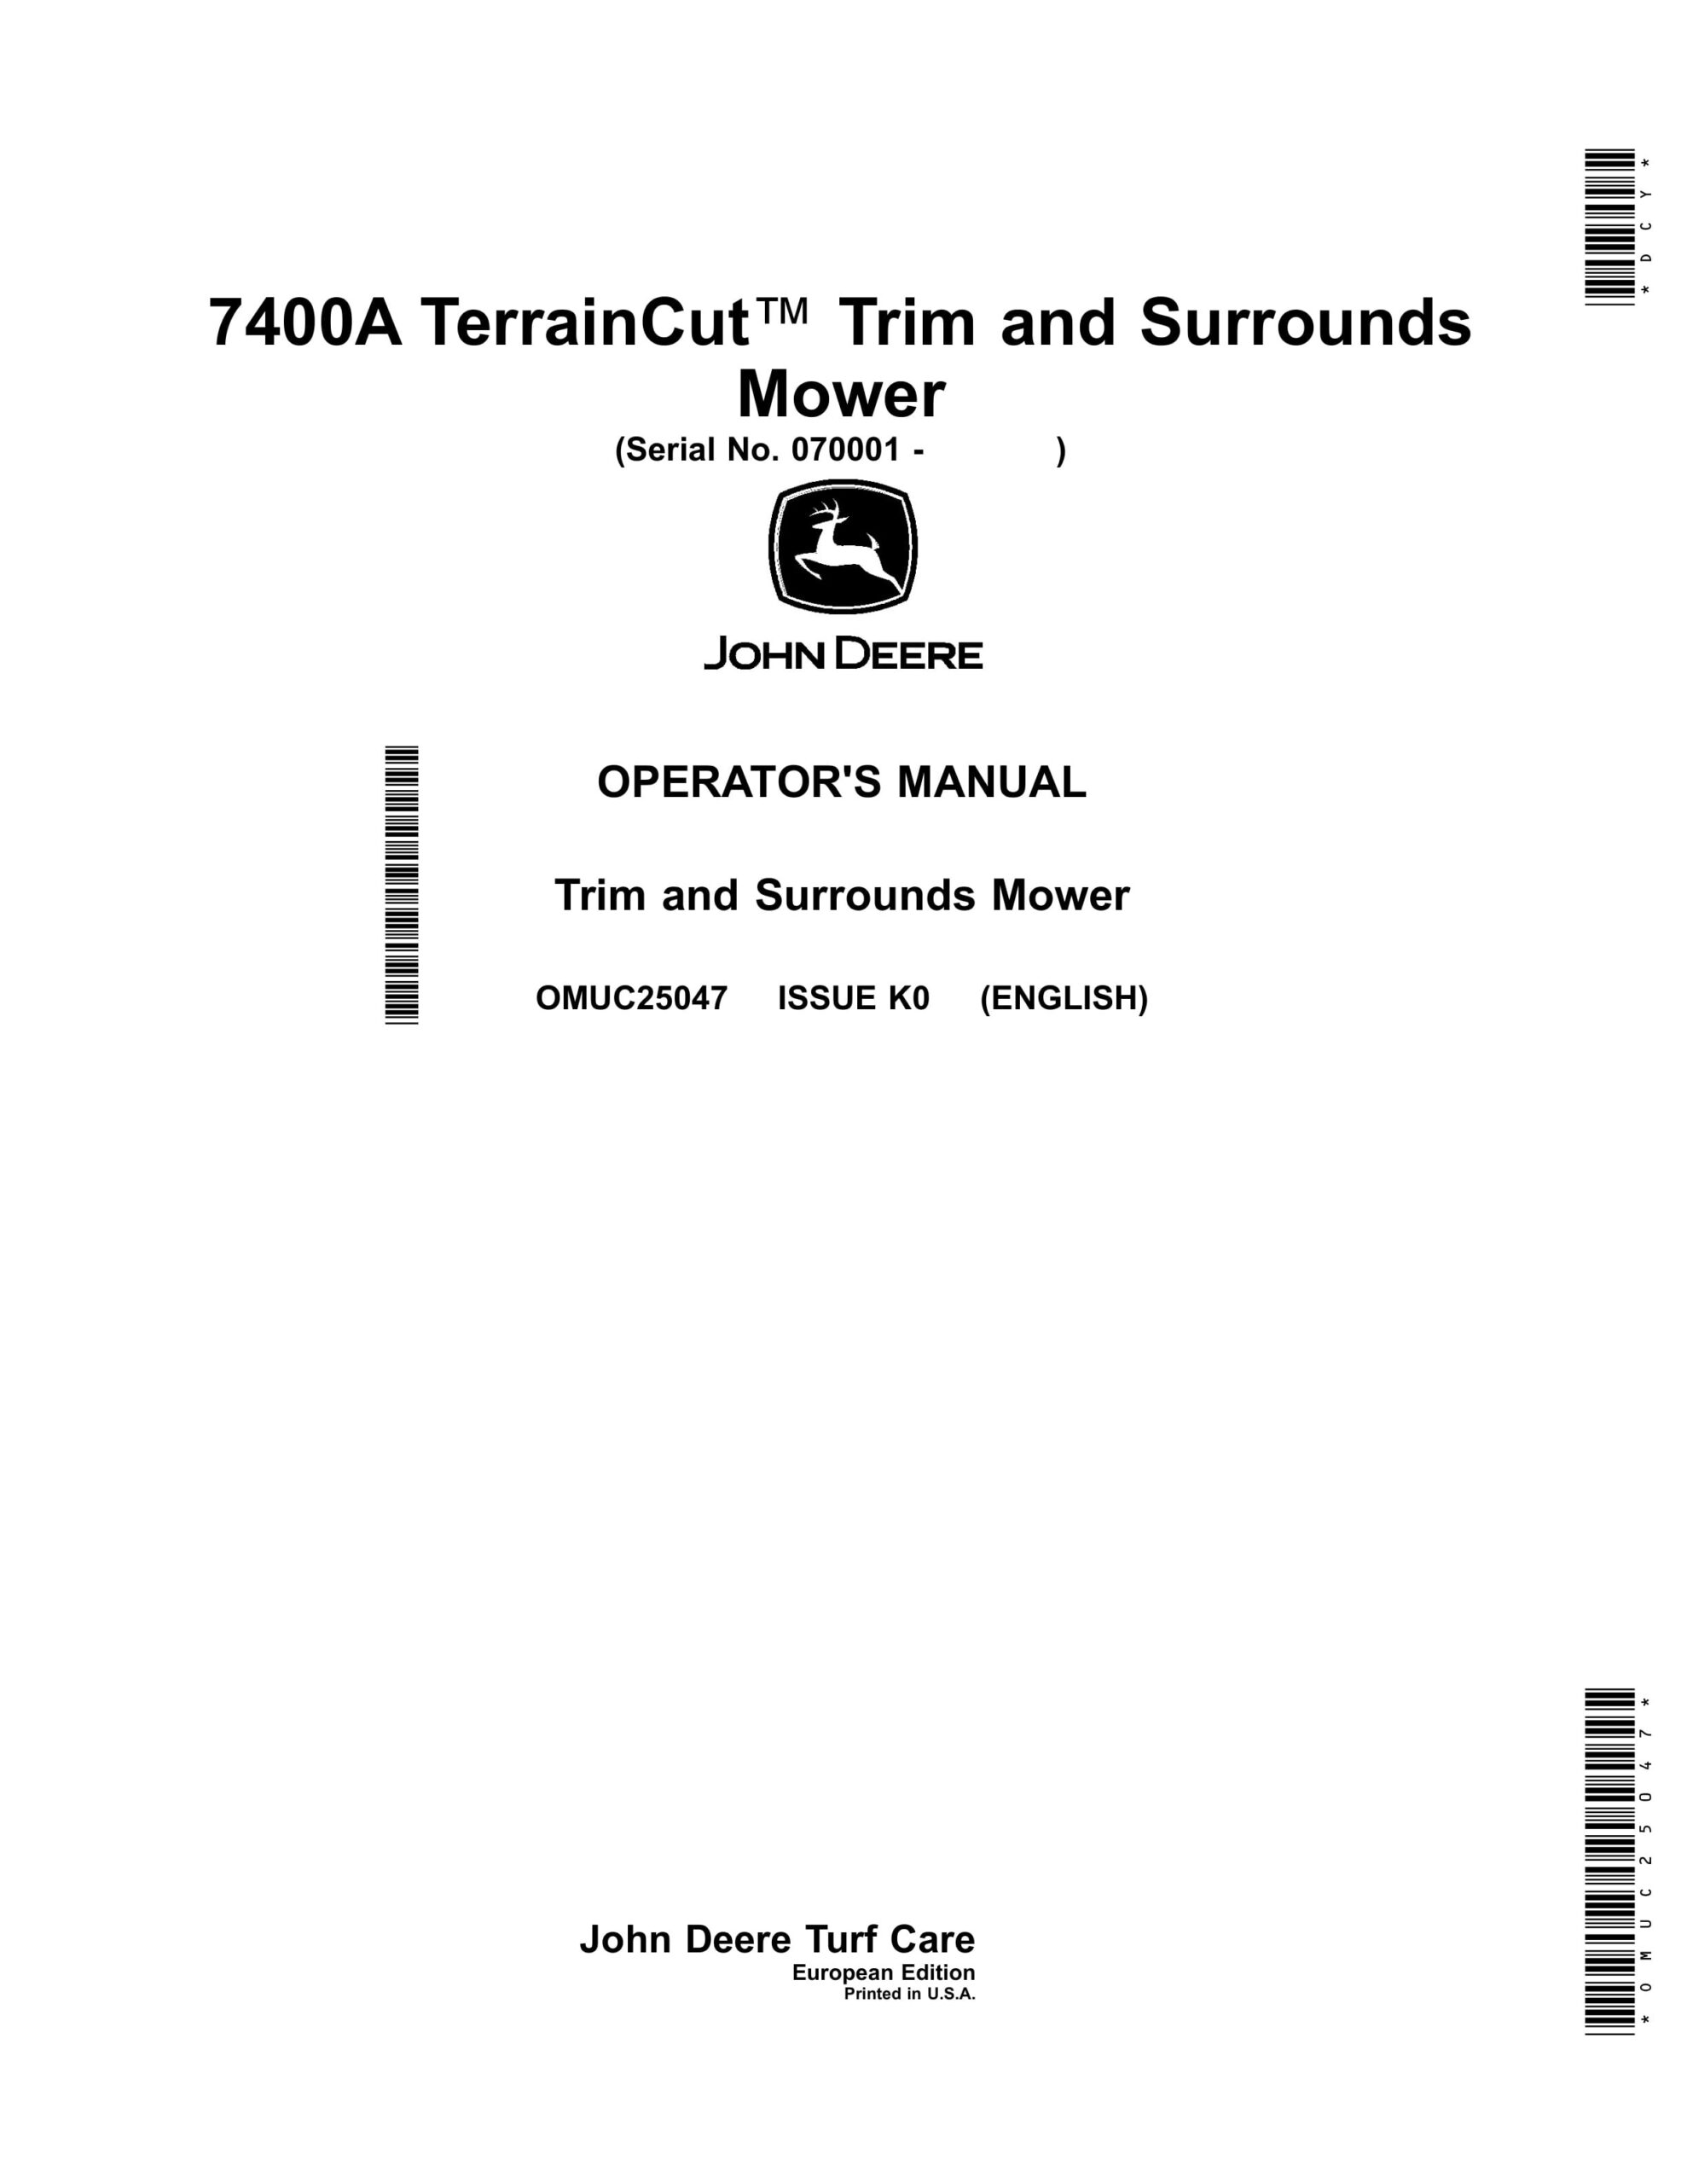 John Deere 7400A TerrainCut Trim and Surrounds Mower Operator Manual OMUC25047-1